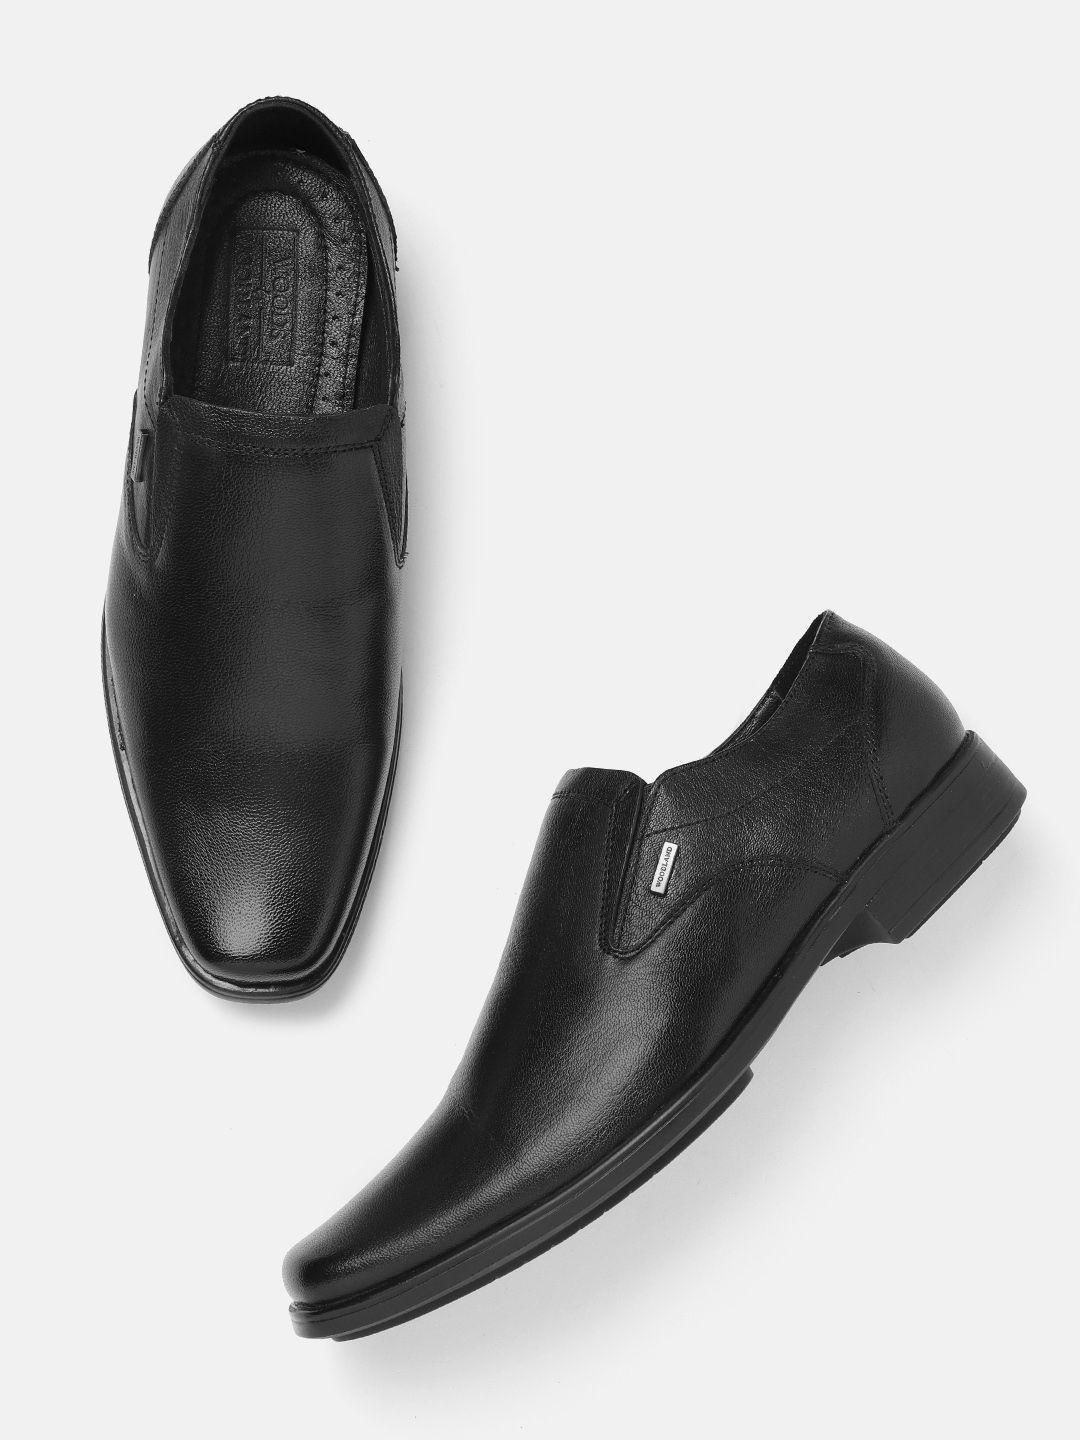 woodland-men-leather-formal-slip-on-shoes